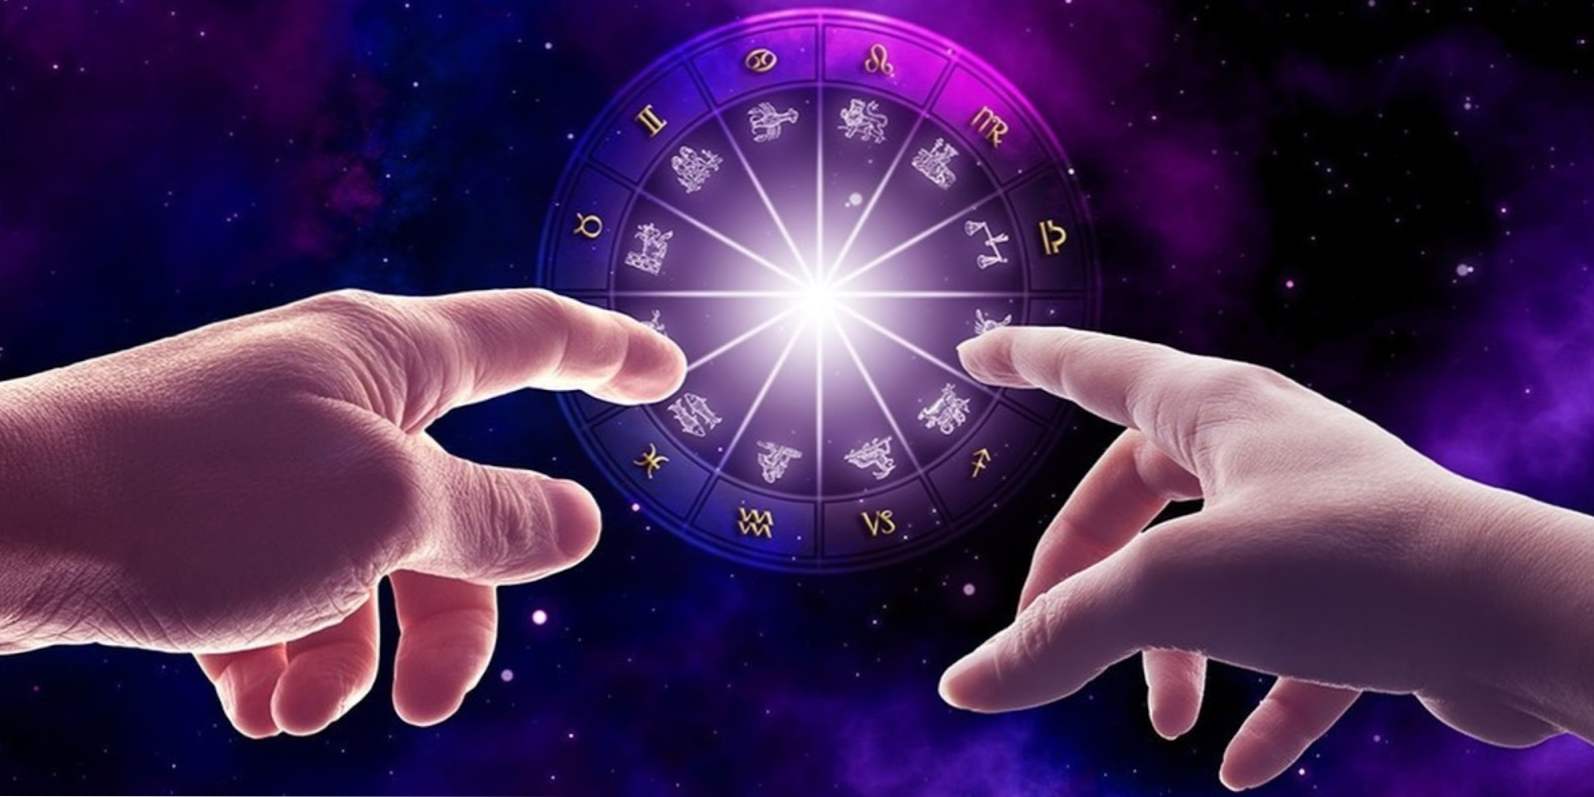 Vaga i Aquarius kompatibilnost znakova zodijaka u ljubavnim odnosima, u prijateljstvu i u braku